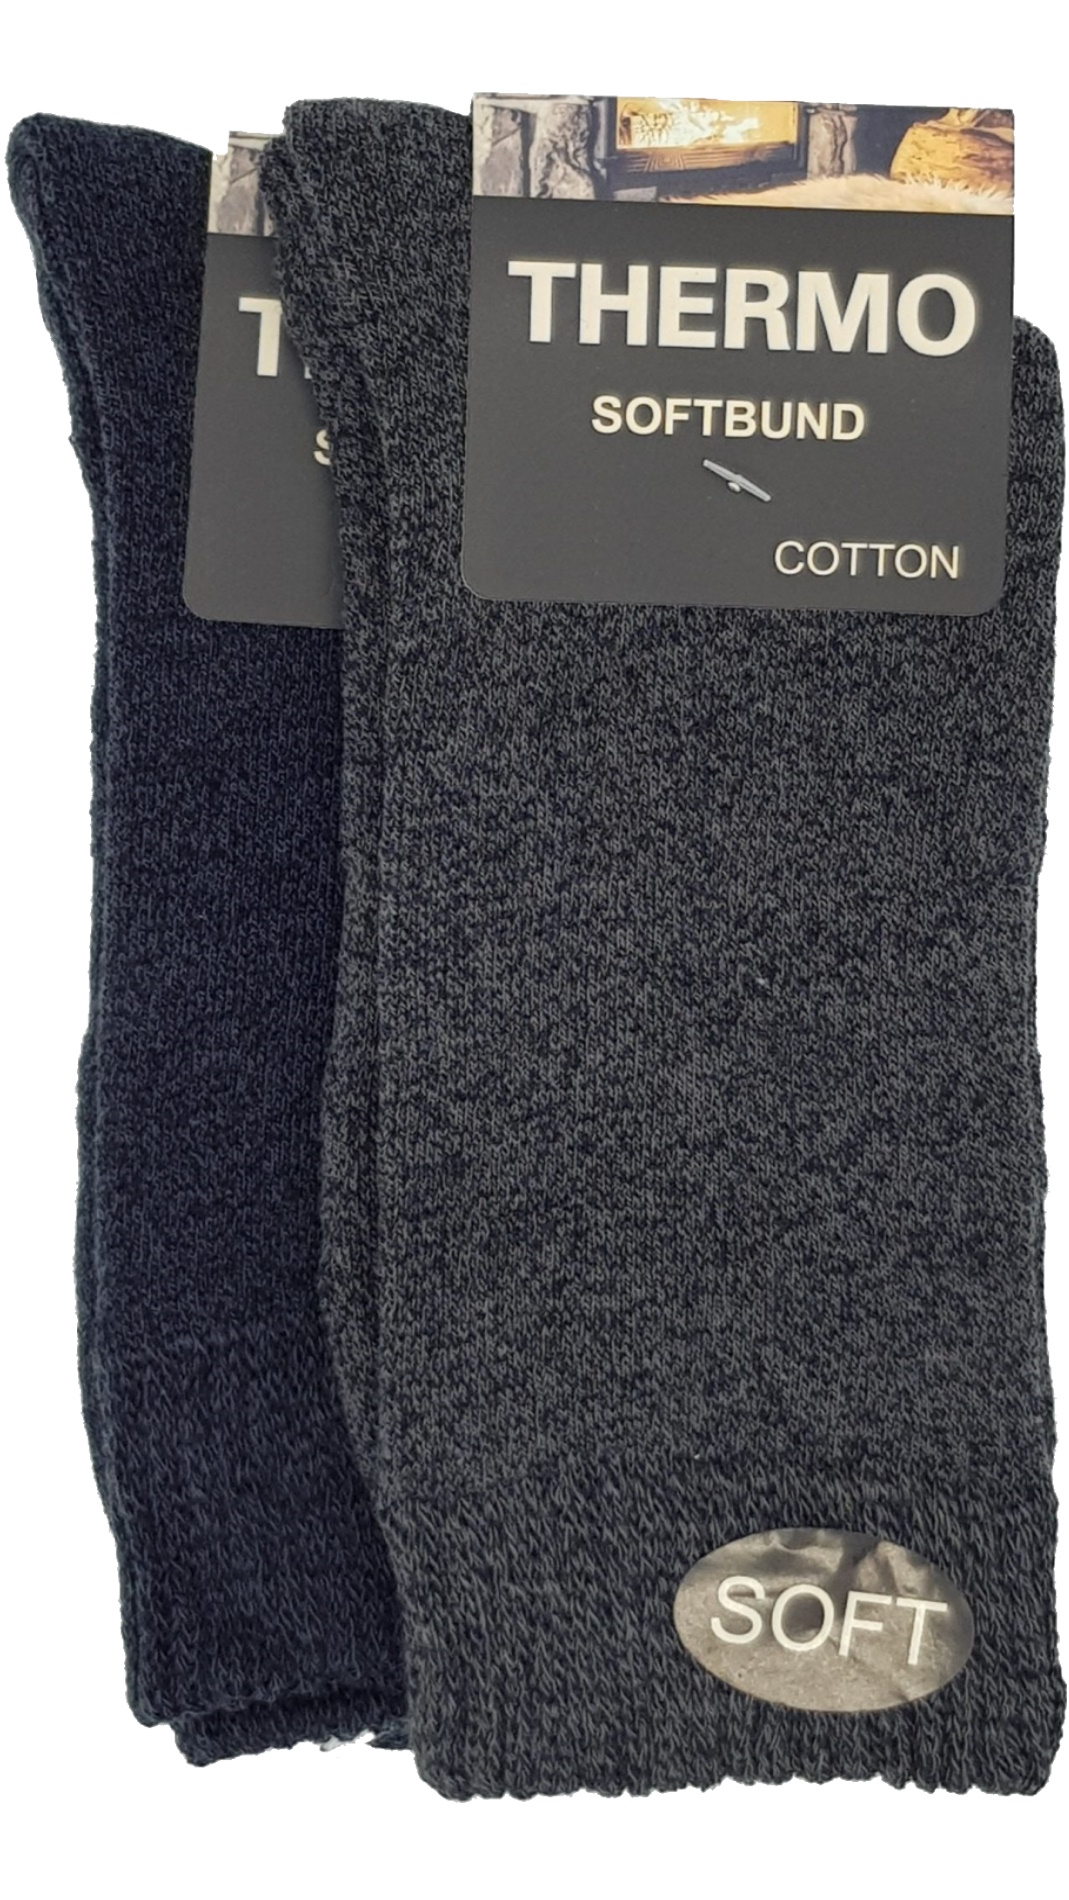 Thermo Soft Socken Softbund 2 Paar (23402,38413) – | 